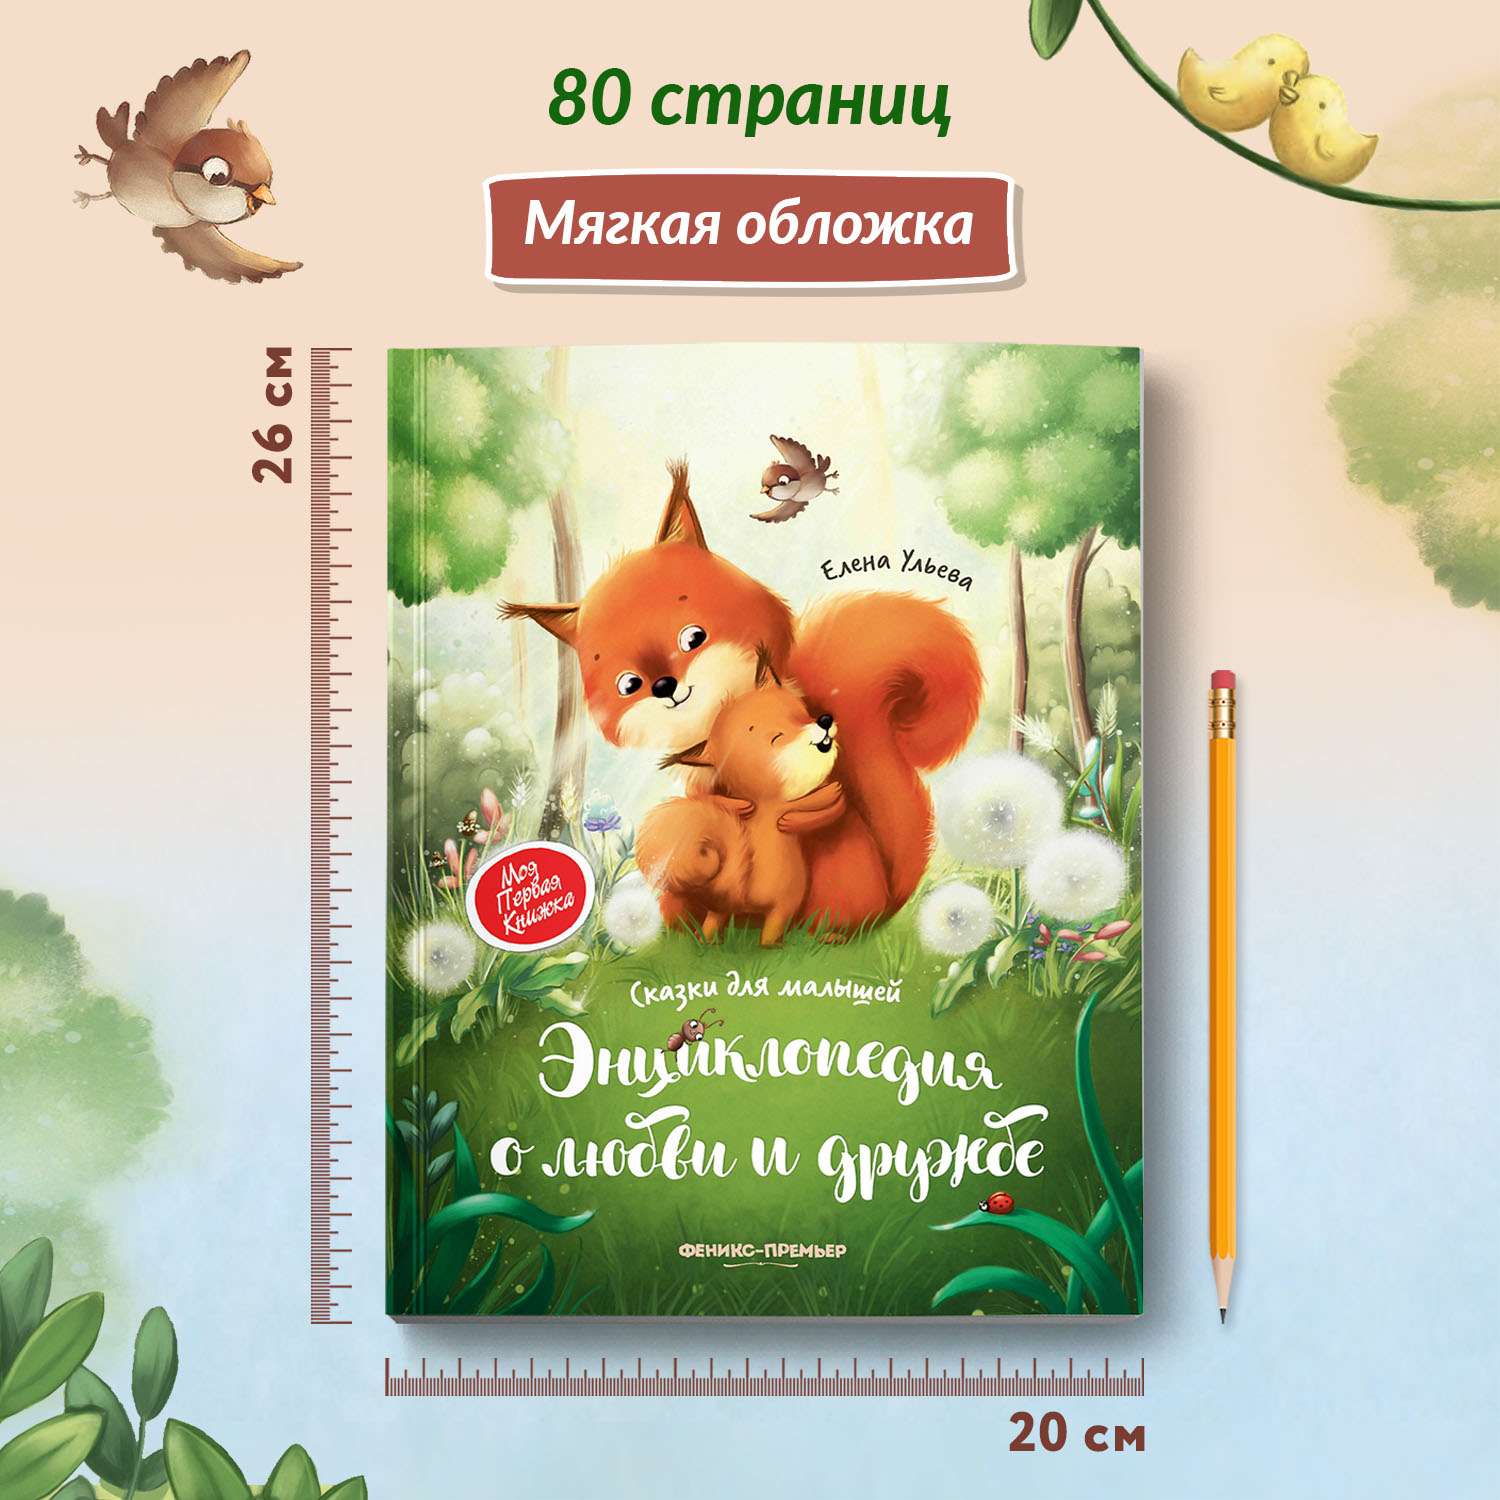 Русские народные сказки для малышей, мягкая книжка игрушка